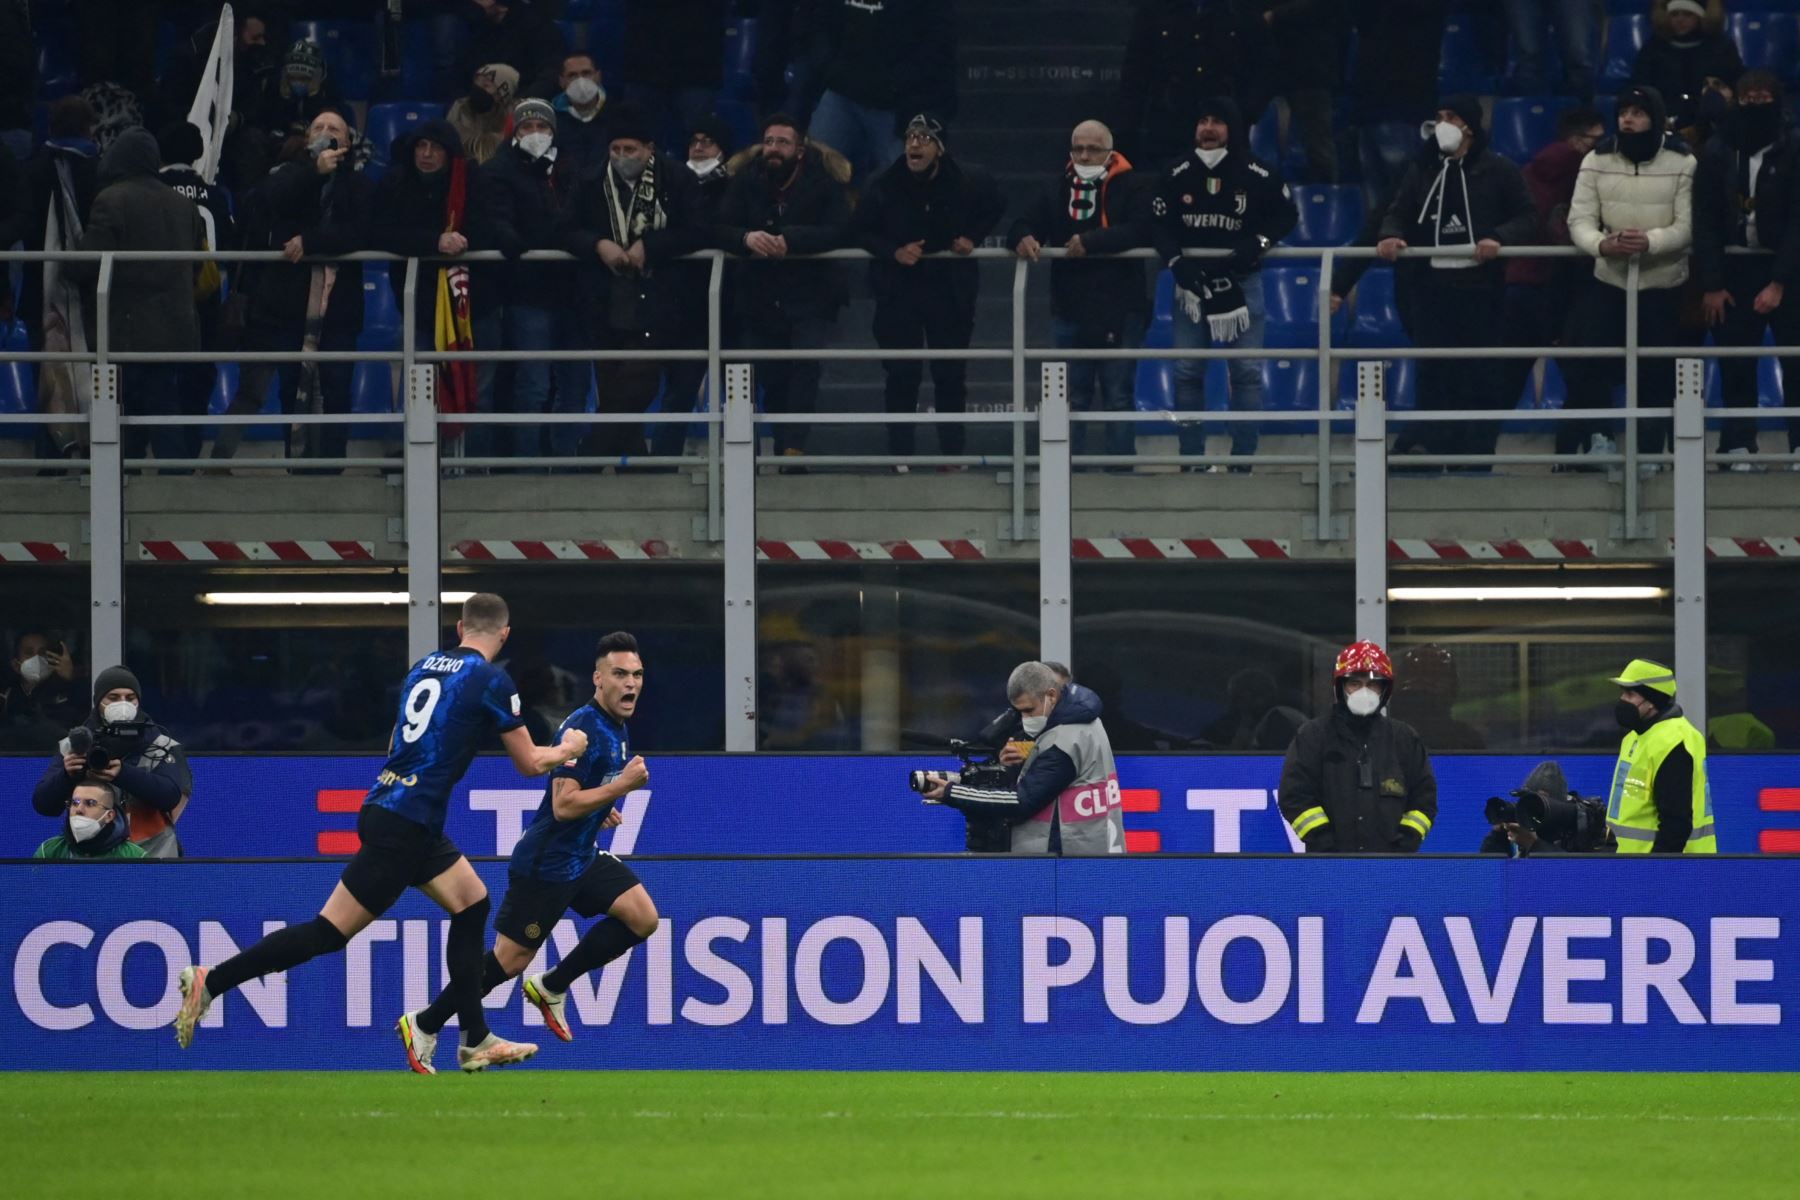 El delantero argentino del Inter de Milán Lautaro Martínez (2ndL) celebra después de anotar un penalti durante el partido de fútbol de la Supercopa italiana (Supercoppa italiana) entre el Inter y la Juventus el 12 de enero de 2022 en el estadio San Siro de Milán. Foto: AFP